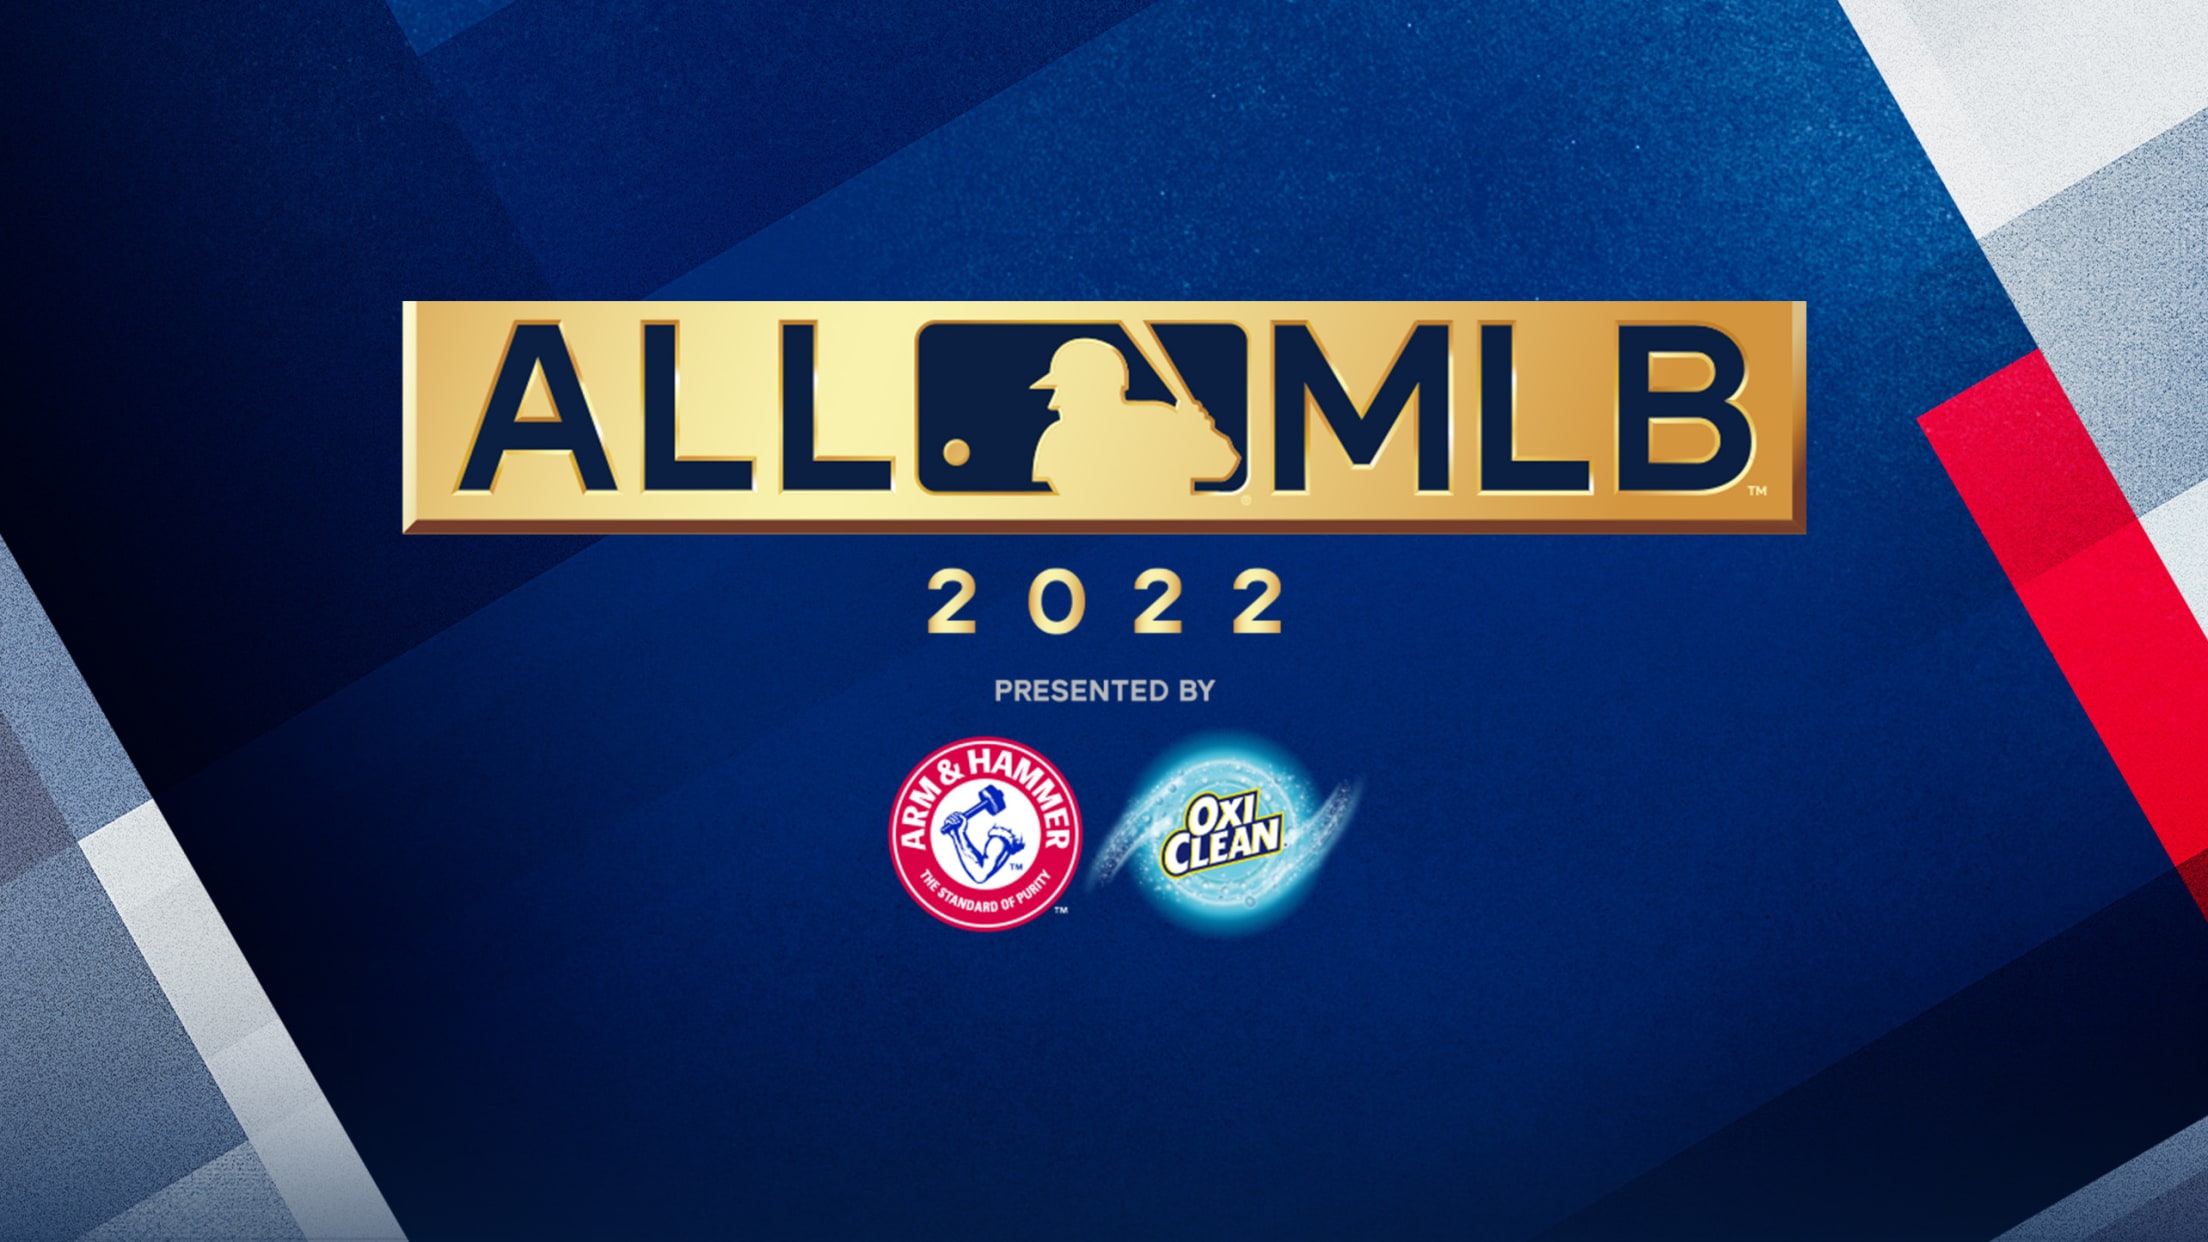 MLB Awards: 2015 MVP voting results and ballots 